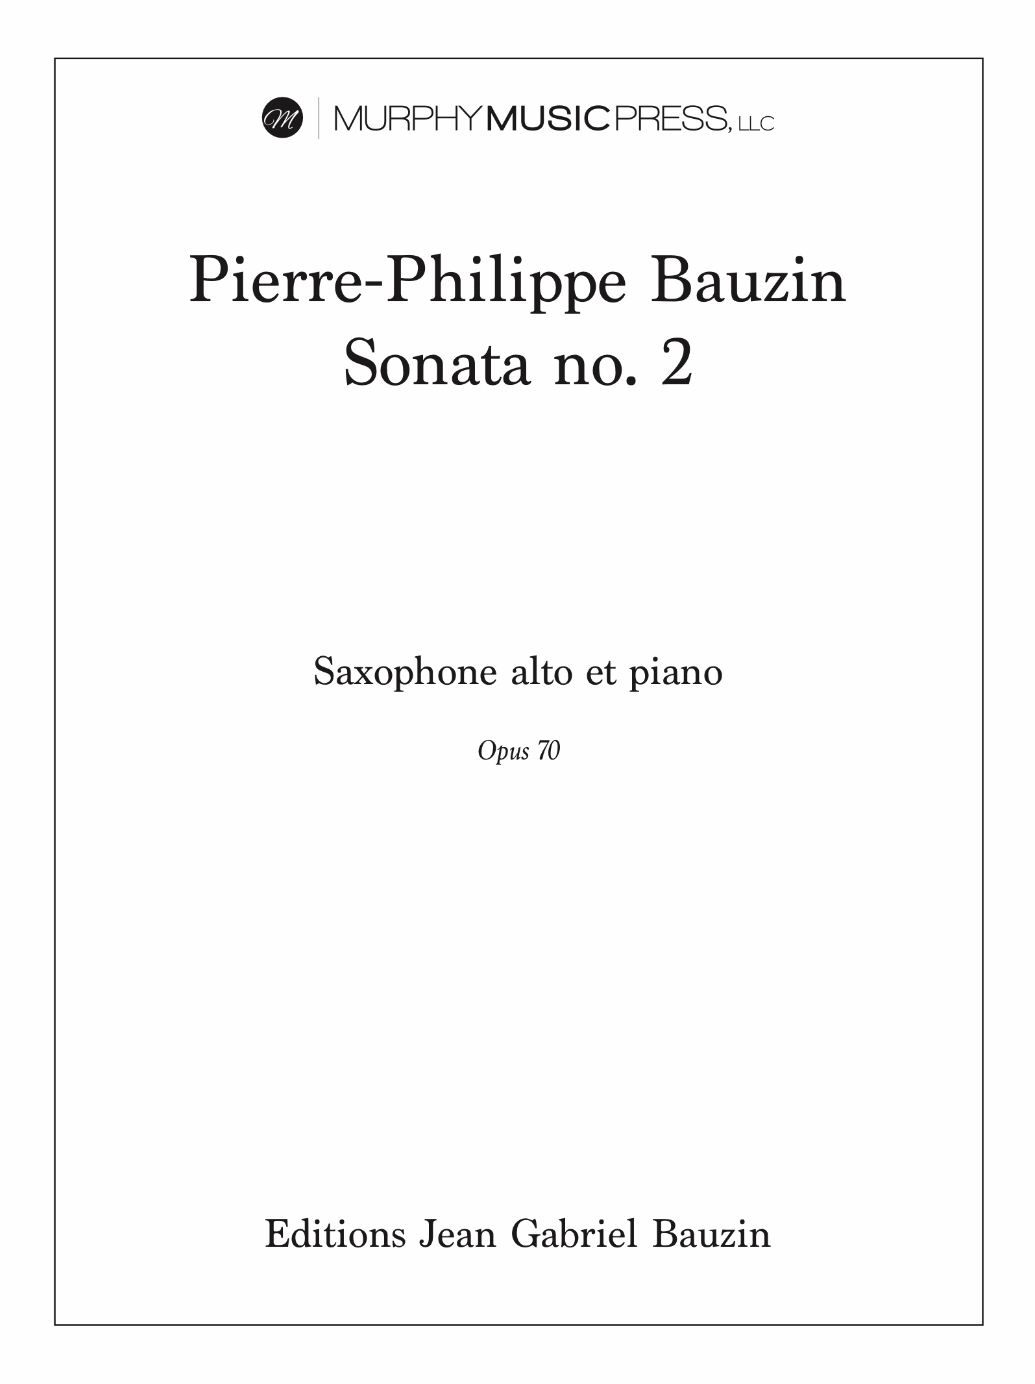 Sonata No. 2 by Pierre-Philippe Bauzin